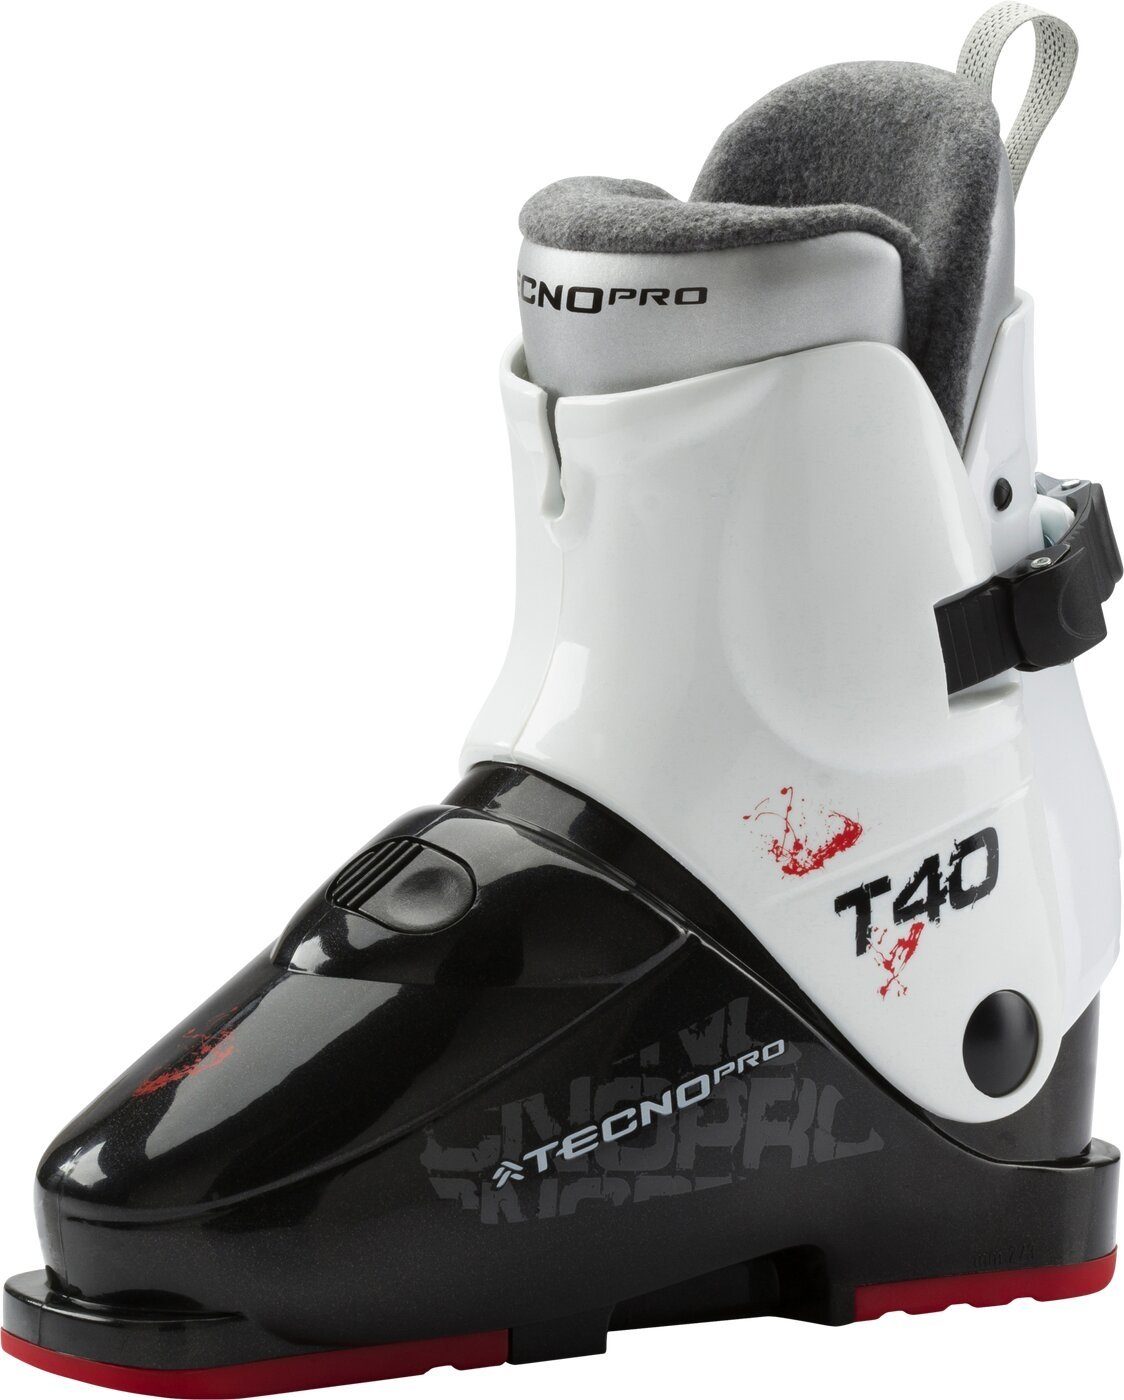 T40 TECNOPRO Skischuh Ski-Stiefel